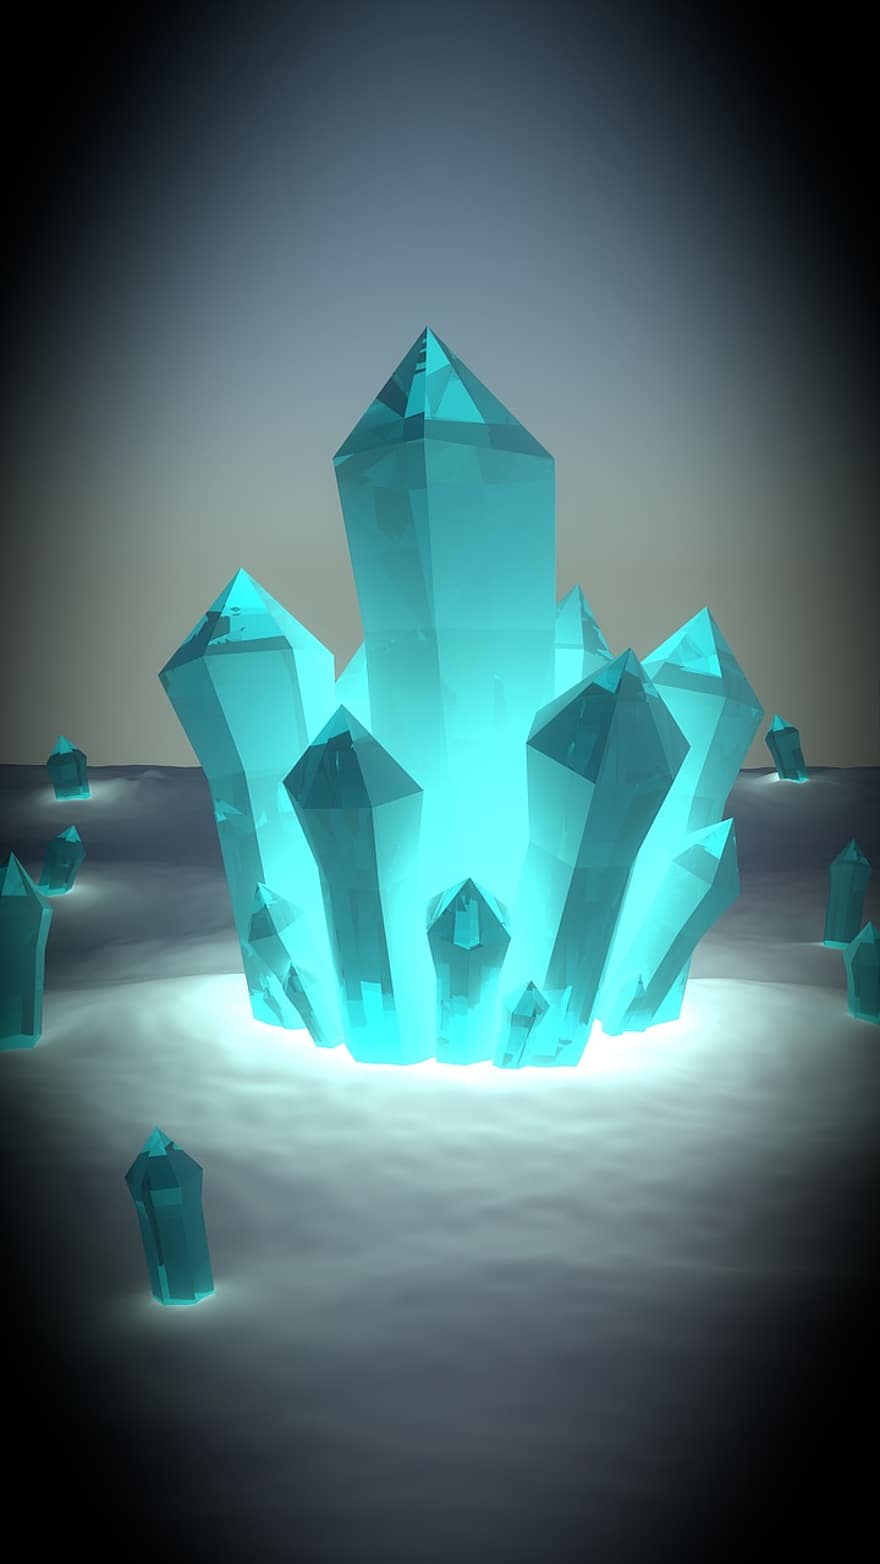 Crystal de glace, cristal, fantaisie, la magie, hiver, bleu